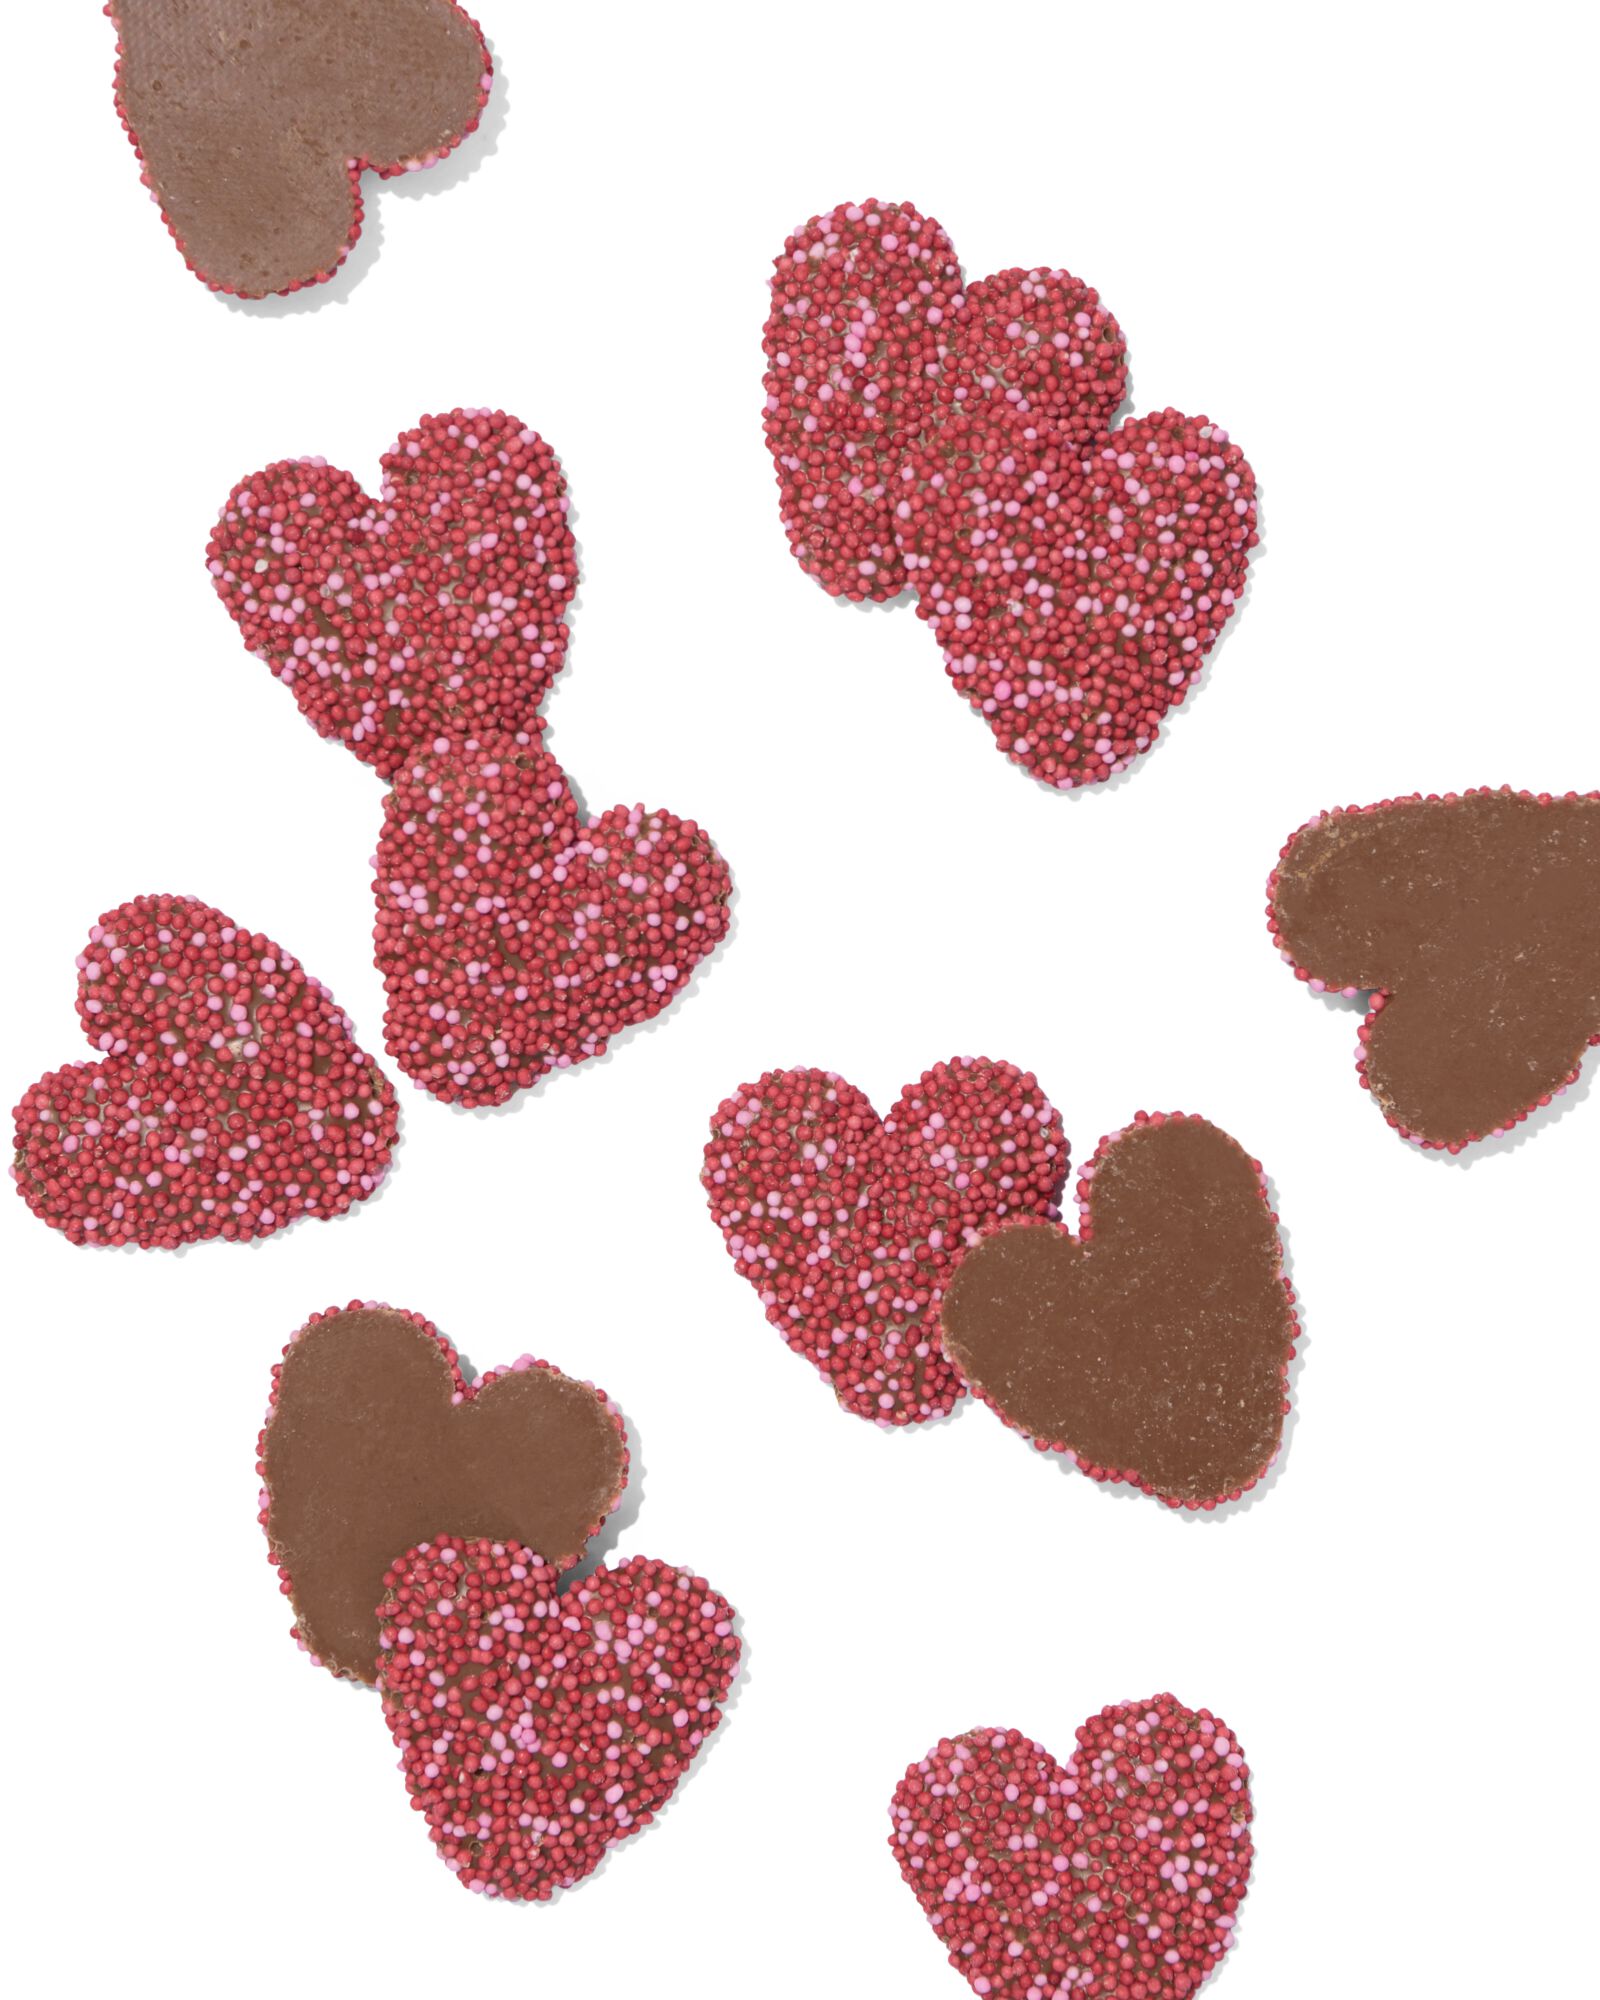 HEMA Décoration Pour Gâteau - Pastilles Choco Coeurs Avec Perles De Sucre 150g